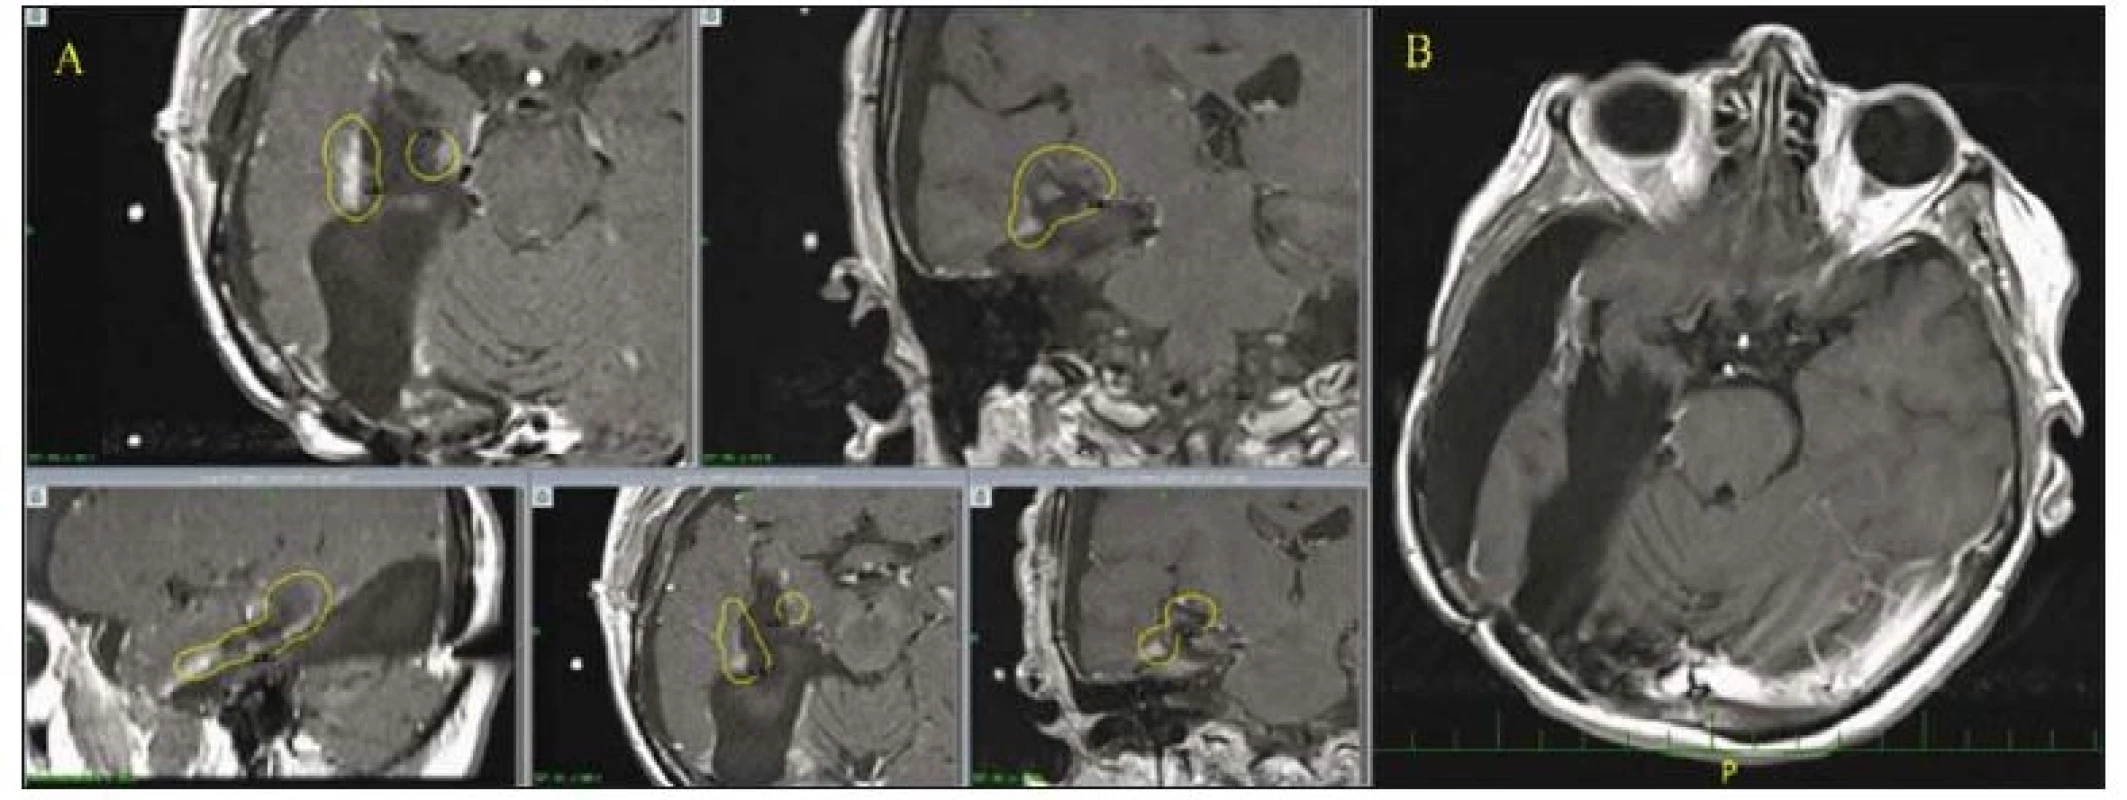 Pacientka ve věku 61 let s GBM temporookcipitálně vpravo a mediotemporálních struktur (hipokampus) po dvou operacích z okcipitálního
přístupu, po další operaci pro progresi rezidua z trannsylvijského přístupu, po konvenční radio- a chemoterapii s SRS boostem
pro reziduum po poslední operaci.
A – Na MR mozku (žlutou barvou zobrazena referenční isodosa) je patrné, že postkontrastně se sytící recidiva při poresekční dutině byla na
gama noži ozářena i s určitým bezpečnostním lemem 1,5–2 mm, výhodou je i lokalizace lézí při poresekční dutině – část integrální dávky, která
by zatěžovala zdravé okolní struktury a zvyšovala riziko komplikací, jde do poresekční dutiny. Rozložení dávky ozáření může též anatomicky
připomínat LERS oblasti fasciculus arcuatus a fimbria fornicis. B – Dlouhodobě uspokojivý grafický výsledek, subdurální kolekce není tenzní,
pacientka je v dobrém klinickém stavu, KPS 60 %, potřebuje asistenci manžela, chodí s ním na procházky.
GBM – multiformní glioblastom; KPS – Karnofsky performance score; LERS – leading edge radiosurgery; SRS – stereotaktická radiochirurgie<br>
Fig. 2. 61-year-old female with a GBM in the right temporooccipital region and in mesiotemporal structures (hippocampus) after two
operations using an occipital approach and a third trans-sylvian resection of a progressing residual lesion followed by conventional radio-
and chemotherapy plus SRS boost for a remnant after the last operation.
A – MRI scan (the yellow line marks the reference isodose curve) shows that the contrast enhancing recurrent lesion close to the postsurgical
cavity was irradiated by gamma knife with a safe margin of 1.5–2 mm, the proximity to the postsurgical cavity is an advantage – a fraction
of the whole radiation dose, which would burden healthy adjacent structures increasing the risk of neurological complications, is dispersed
into the postresectional cavity. The distribution of the irradiation reminds anatomically LERS (fasciculus arcuatus region and fimbria fornicis).
B – Long-term good radiologic outcome, the subdural cerebrospinal fluid pseudocyst is not tense, the patient is in a good conditions, KPS 60%,
she needs assistance from her husband, she goes for a walk with him.
GBM – glioblastoma multiforme; KPS – Karnofsky performance score; LERS – leading edge radiosurgery; SRS – stereotactic radiosurgery